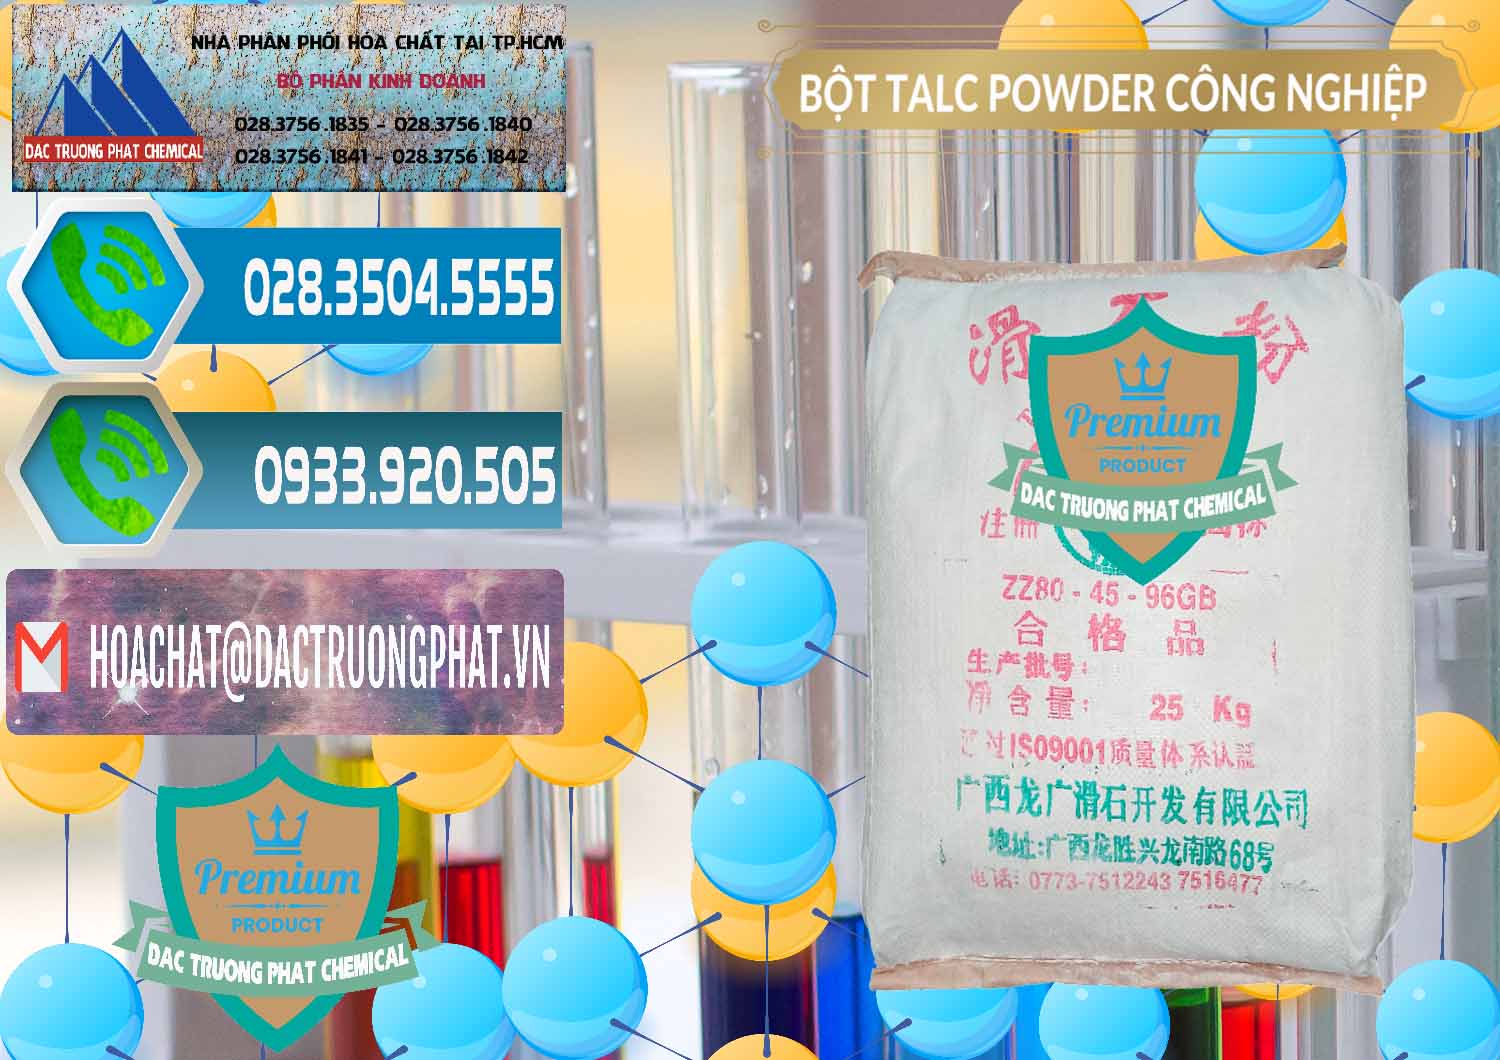 Cty bán _ cung cấp Bột Talc Powder Công Nghiệp Trung Quốc China - 0037 - Công ty cung cấp _ phân phối hóa chất tại TP.HCM - congtyhoachat.net